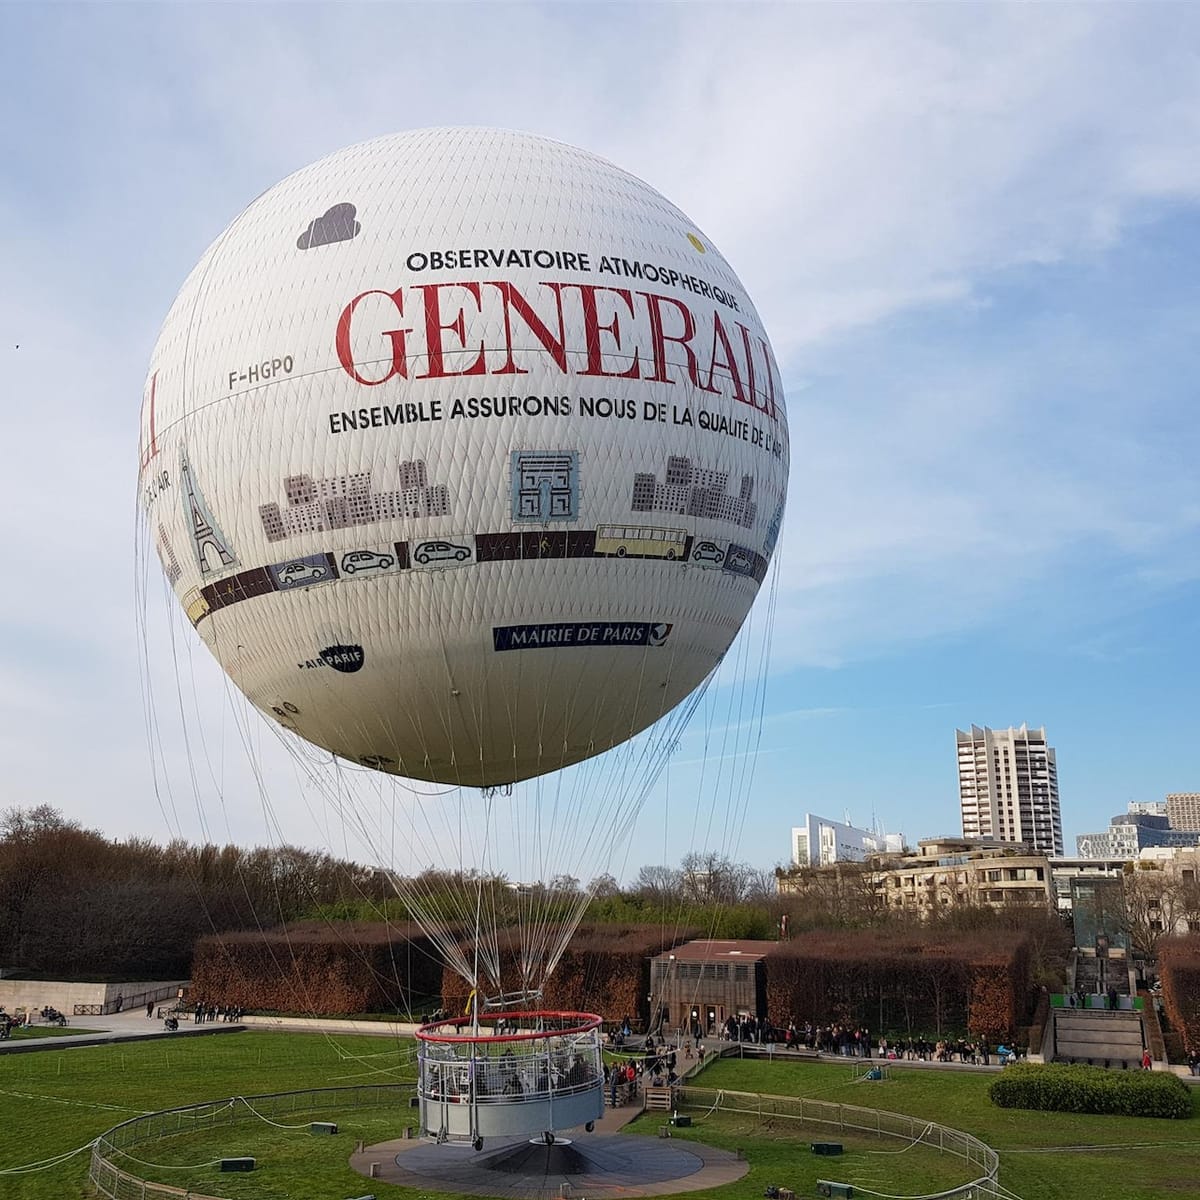 generali-balloon-flight-over-paris-open-ticket_1